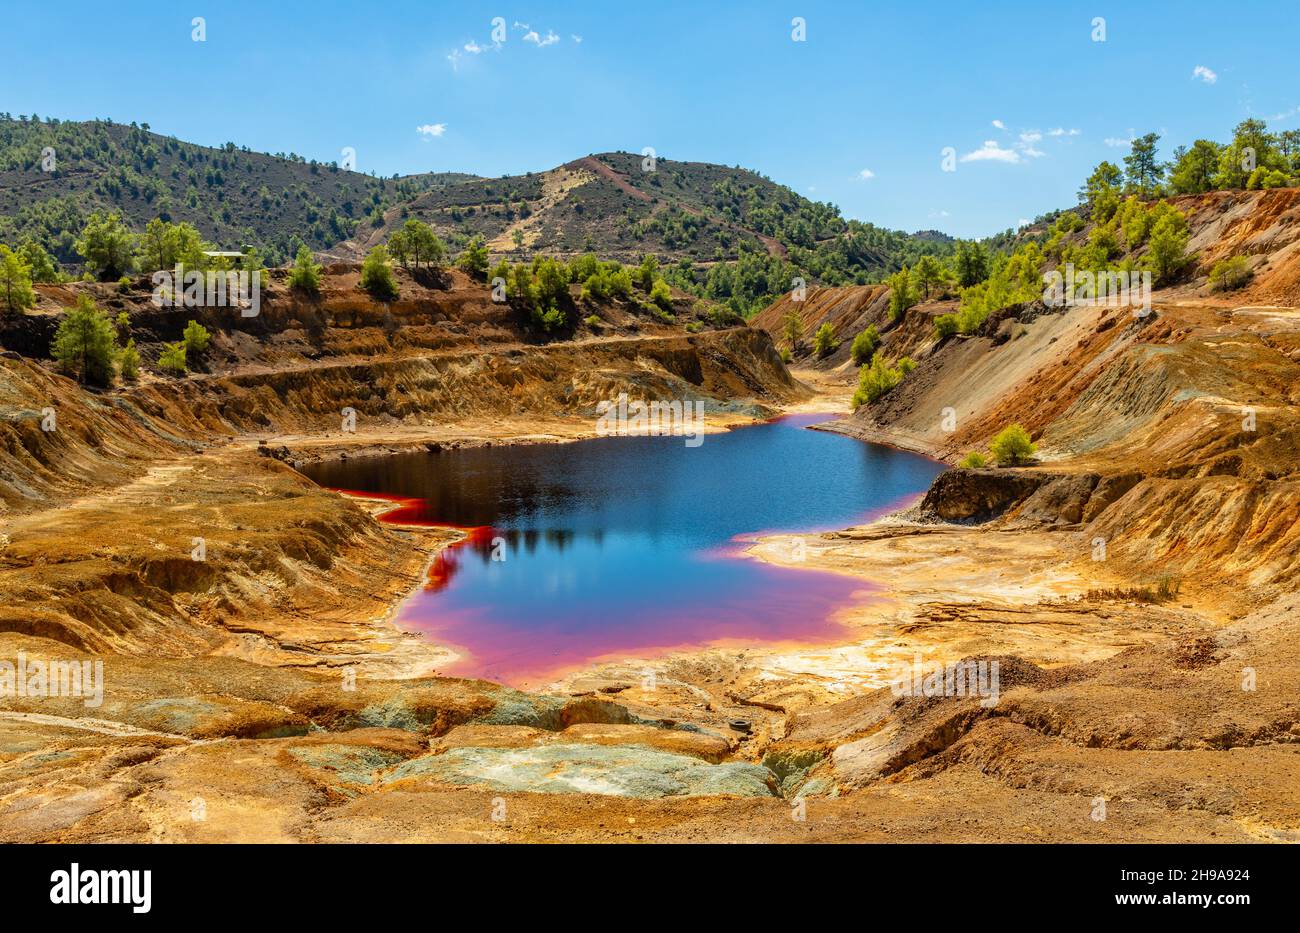 Dangereux sang coloré avec la pollution de cuivre Sha mine lac, Nicosie, Chypre Banque D'Images